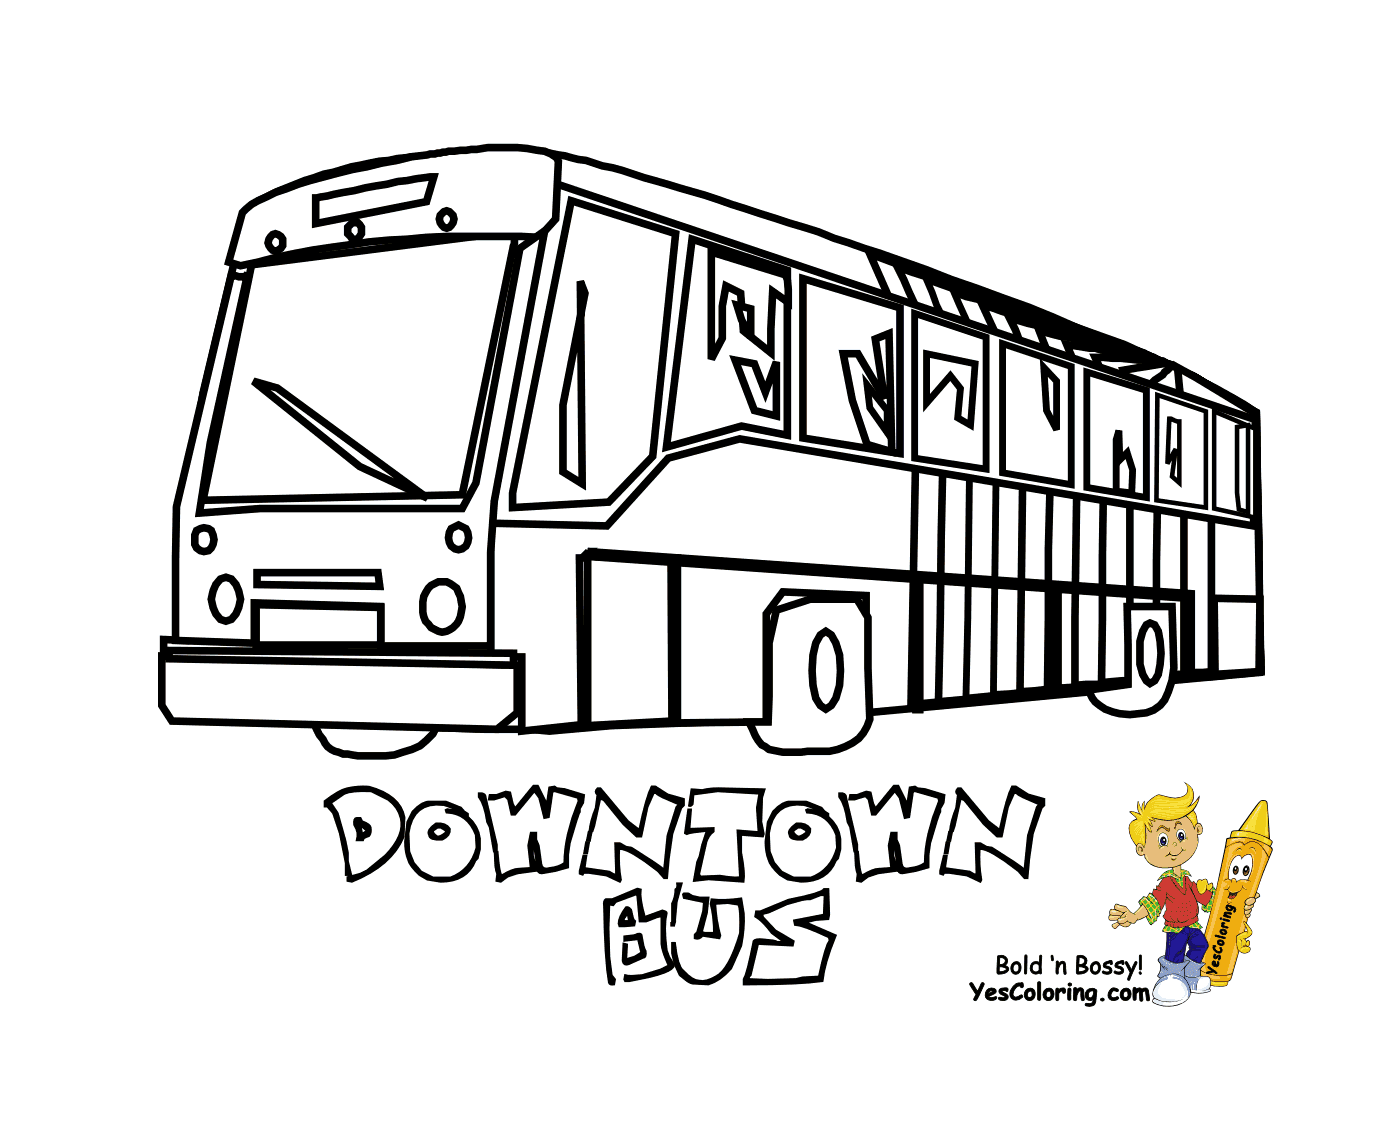  Un autobus urbano corre proprio nel centro della città 